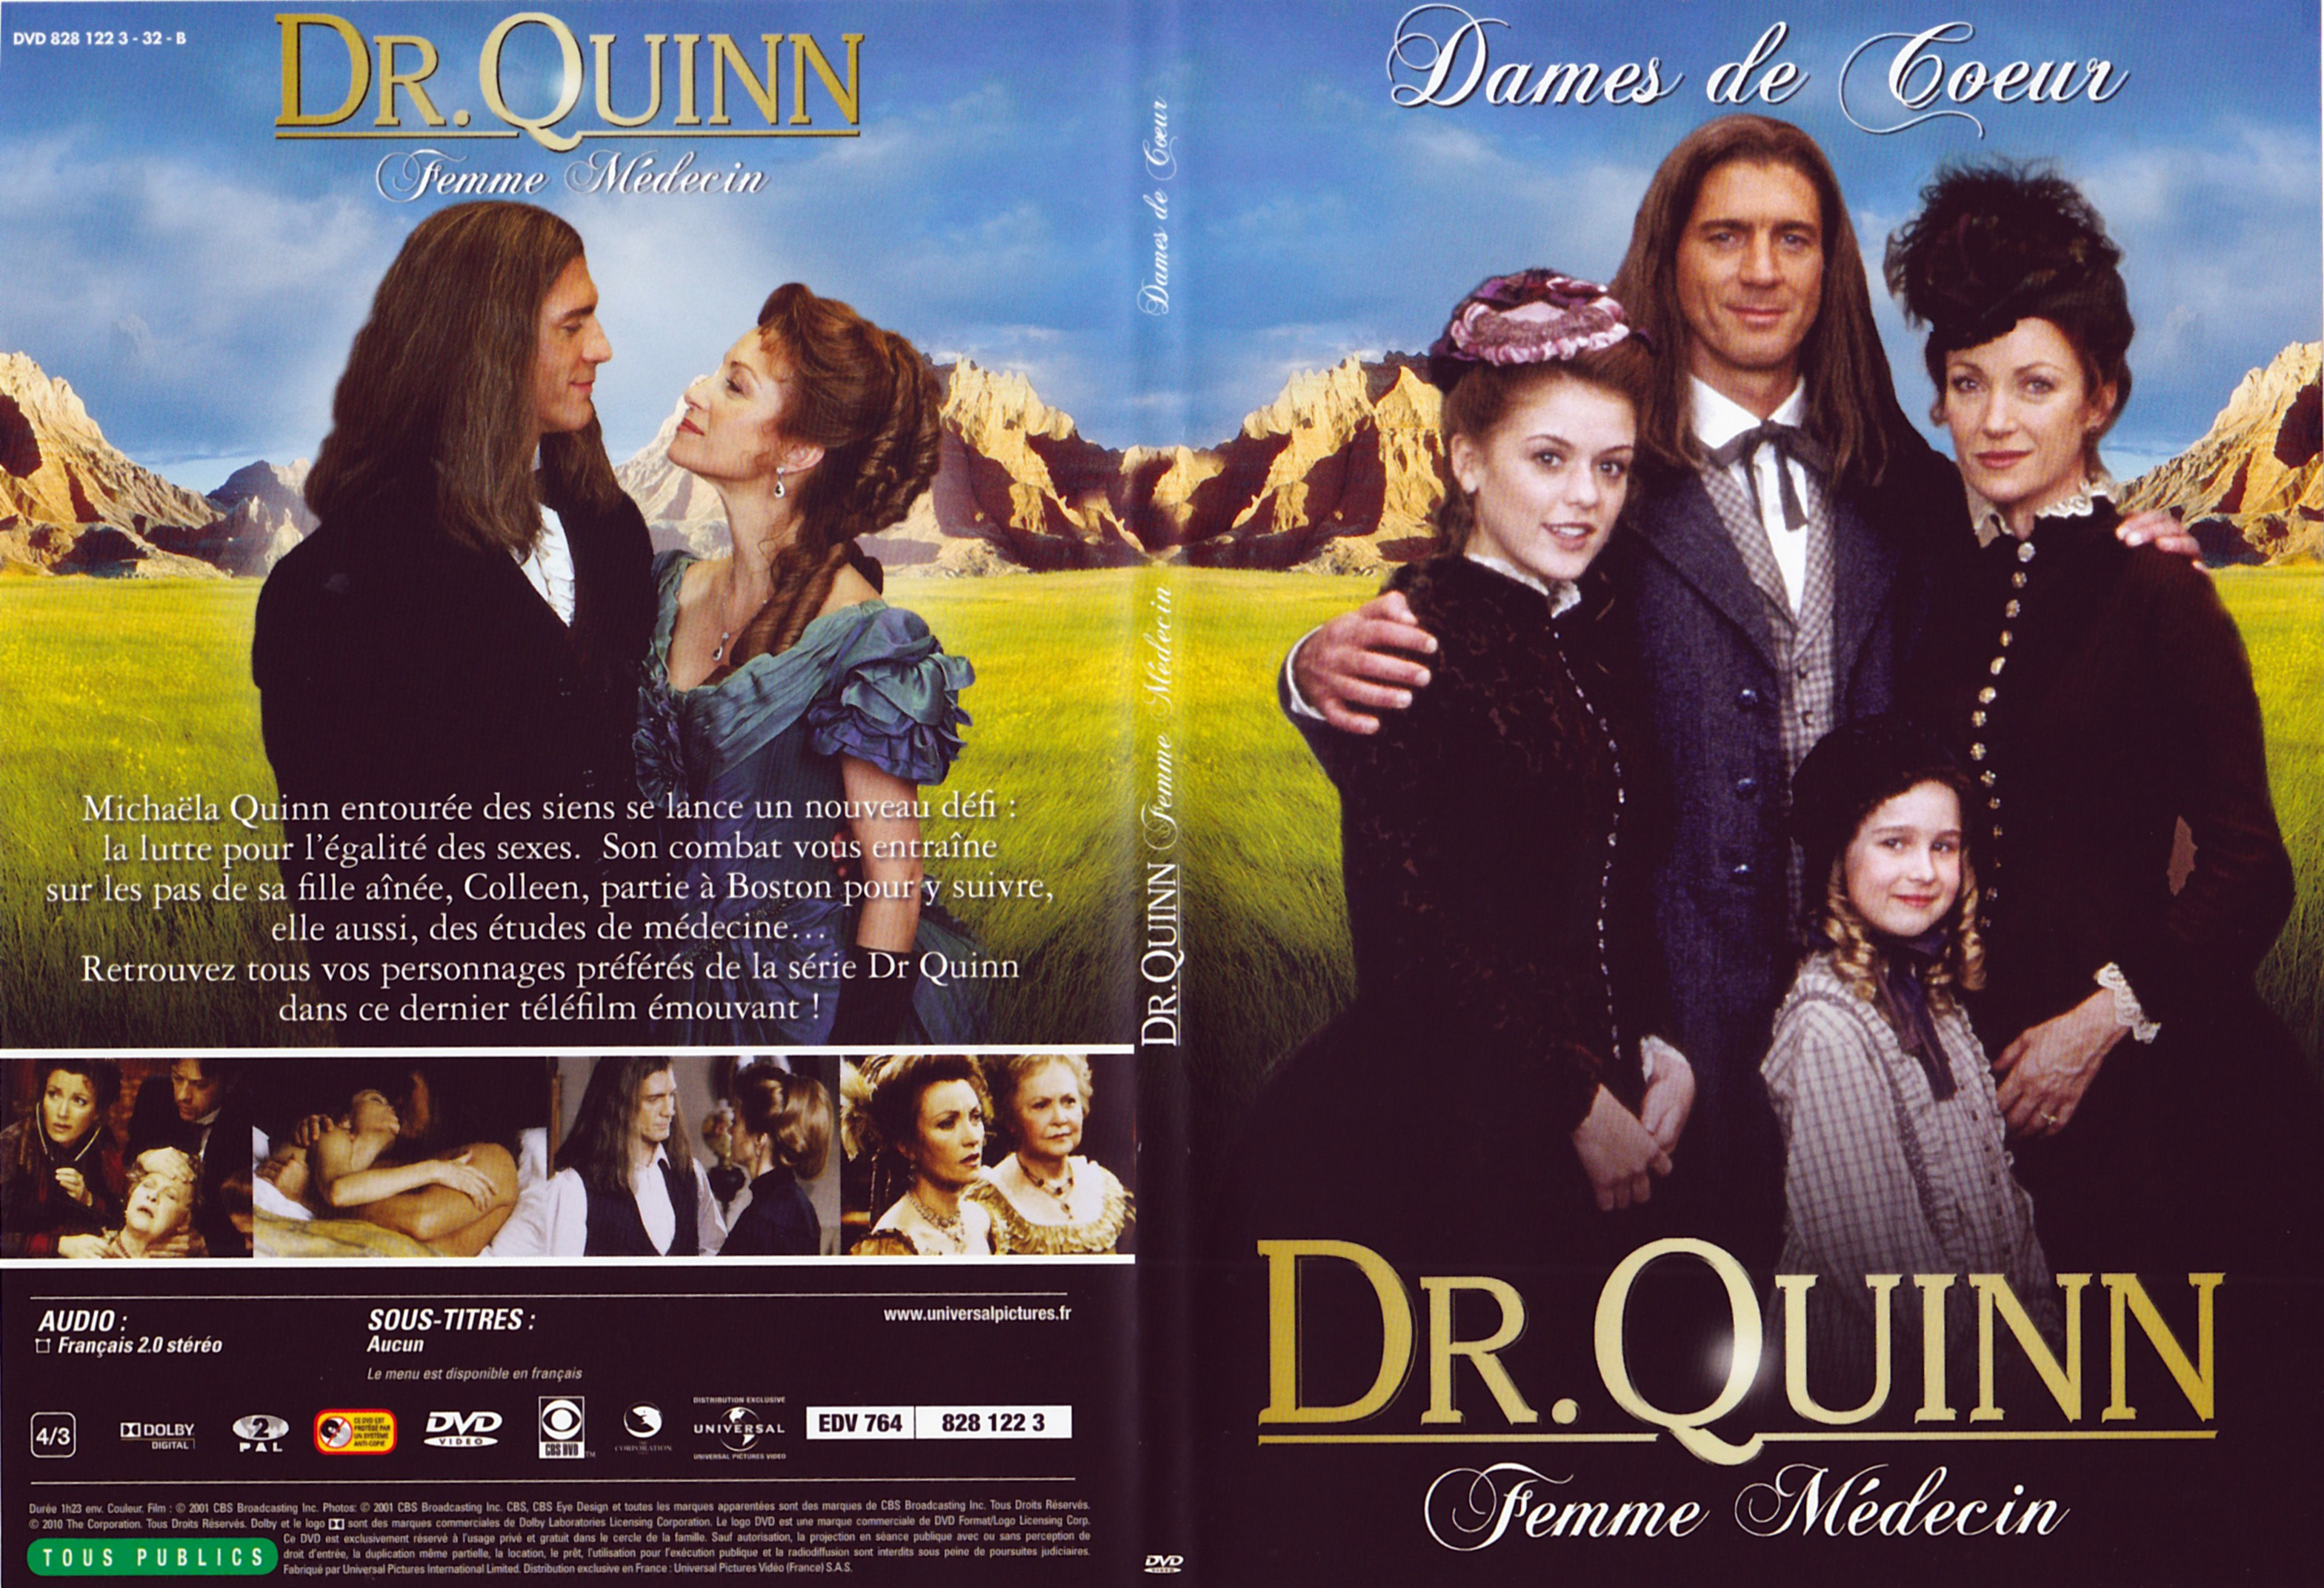 Jaquette DVD Docteur Quinn femme mdecin - Dames de coeur